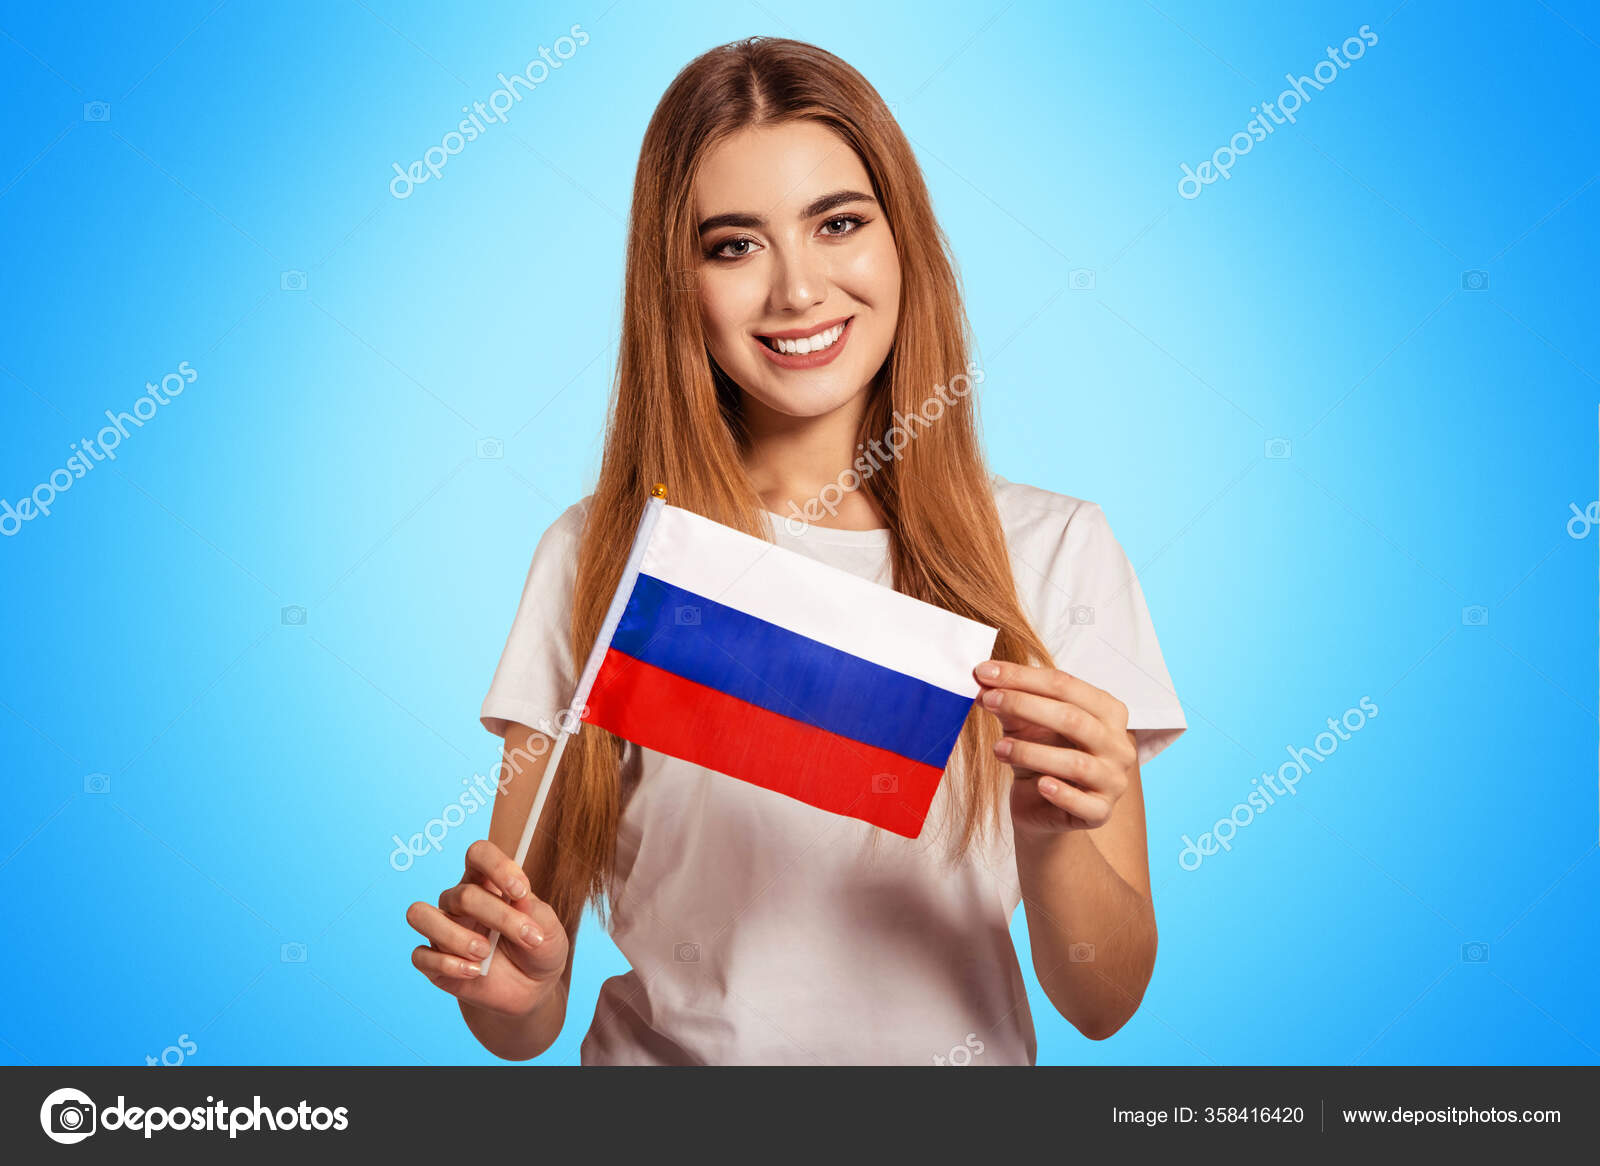 Uma Bela Jovem Tem Nas Mãos Bandeira Federação Russa Estudante fotos,  imagens de © Nadin_Inaya #358416404